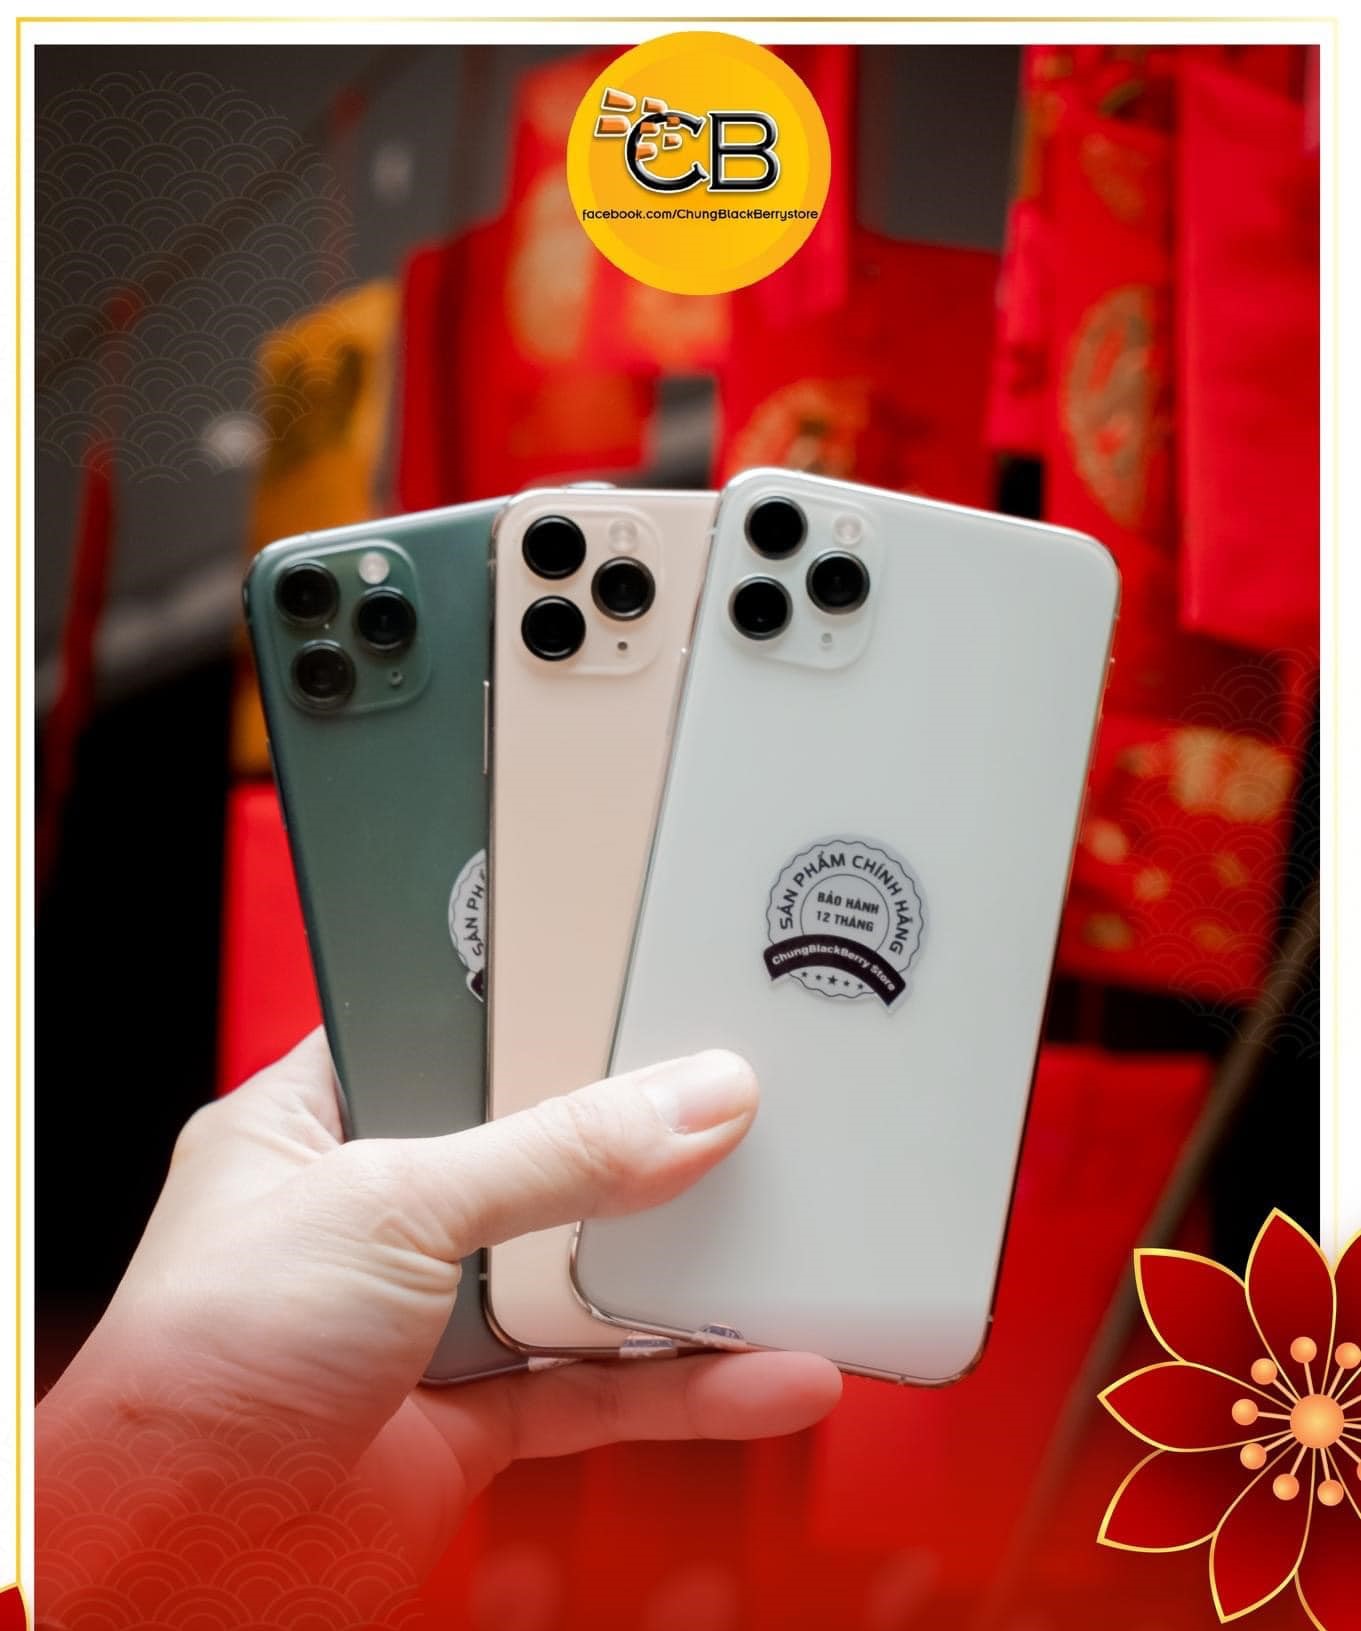 Lựa chọn mua iPhone 11 Promax cũ Thái Nguyên tại Chungblackberry Store có những ưu điểm gì?